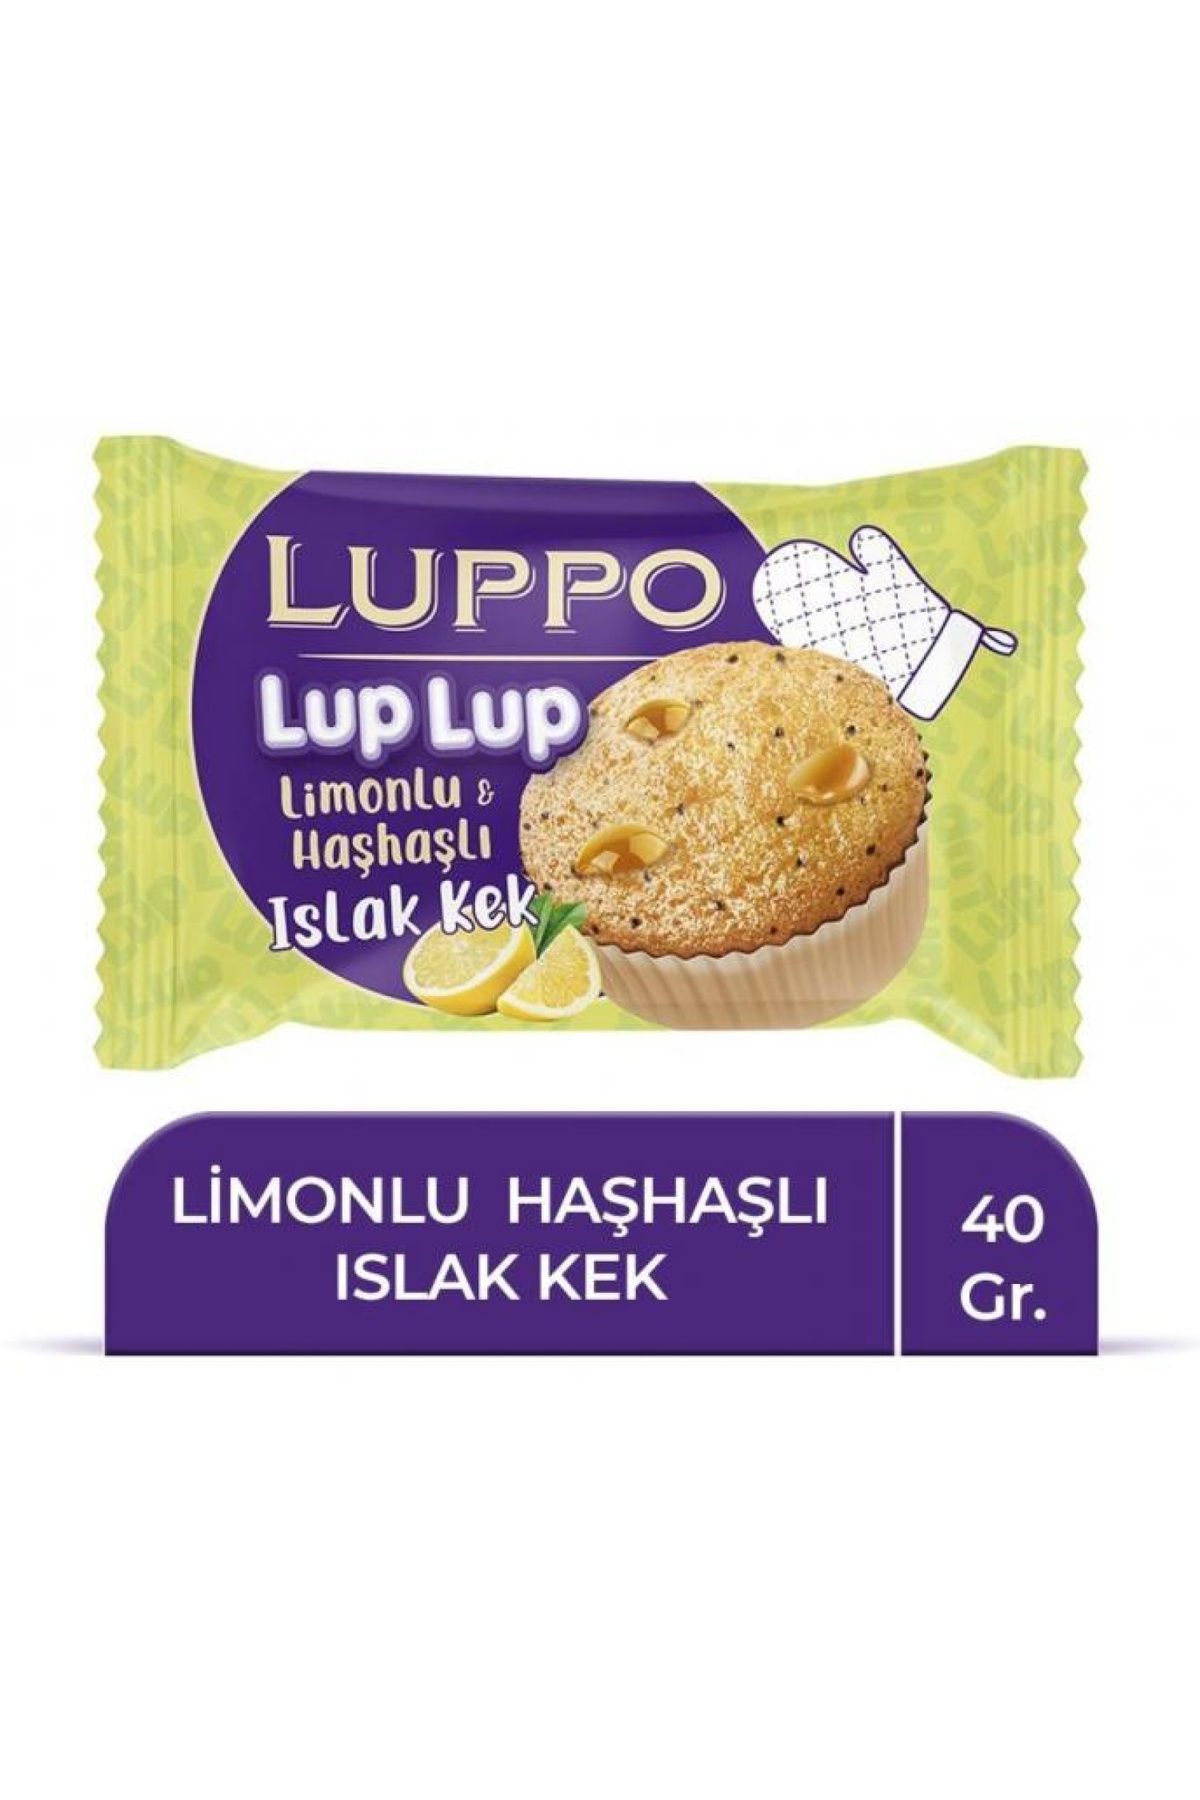 Şölen Luppo Limonlu Haşhaşlı Islak Kek 40 Gr. (6'lı)